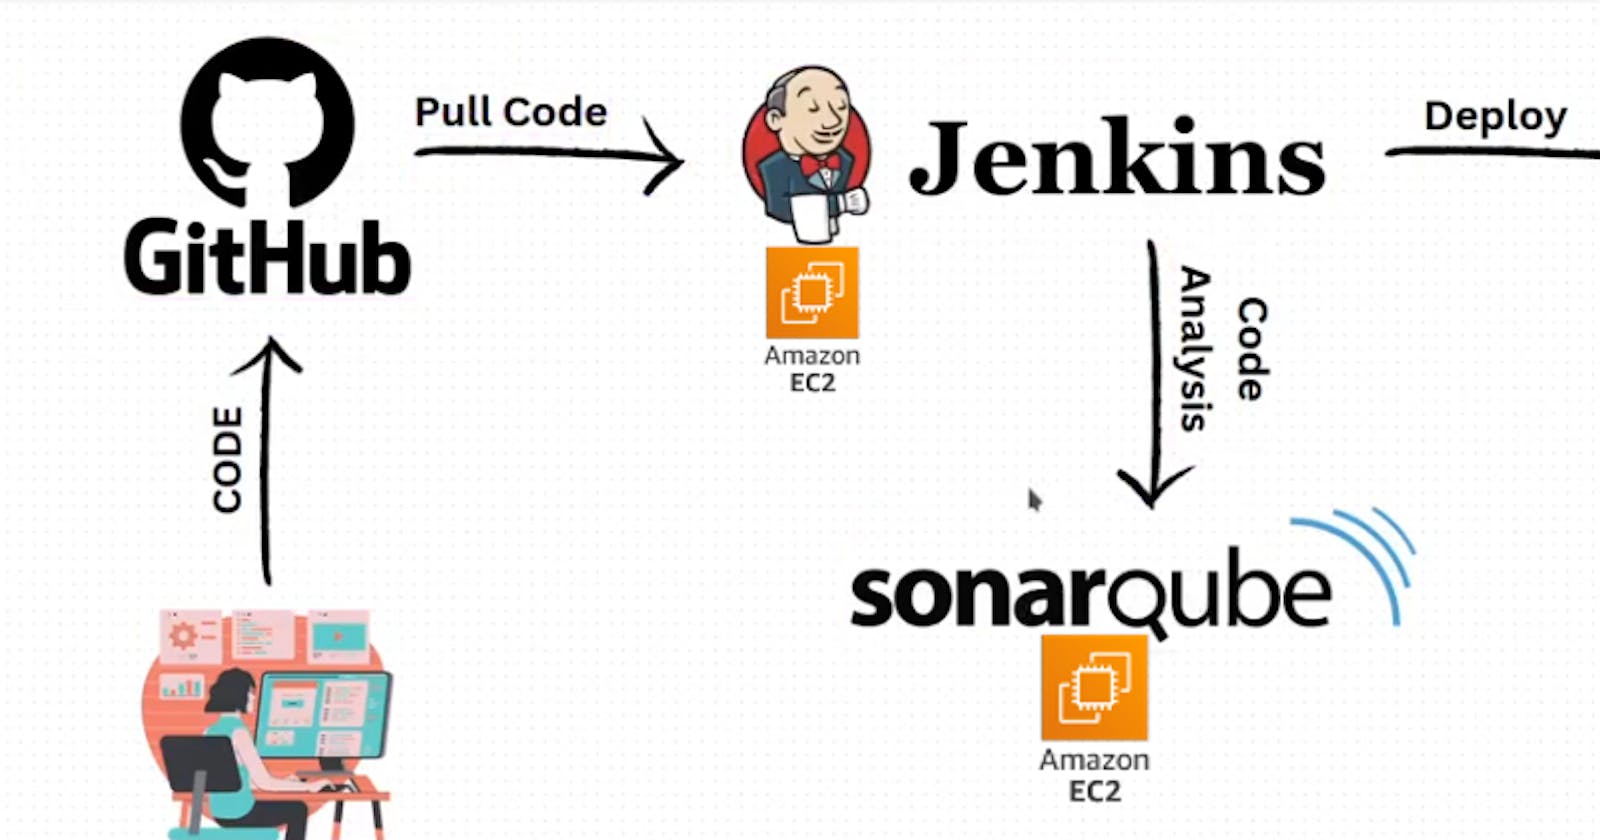 Jenkins-SonarQube-Docker project using Webhooks